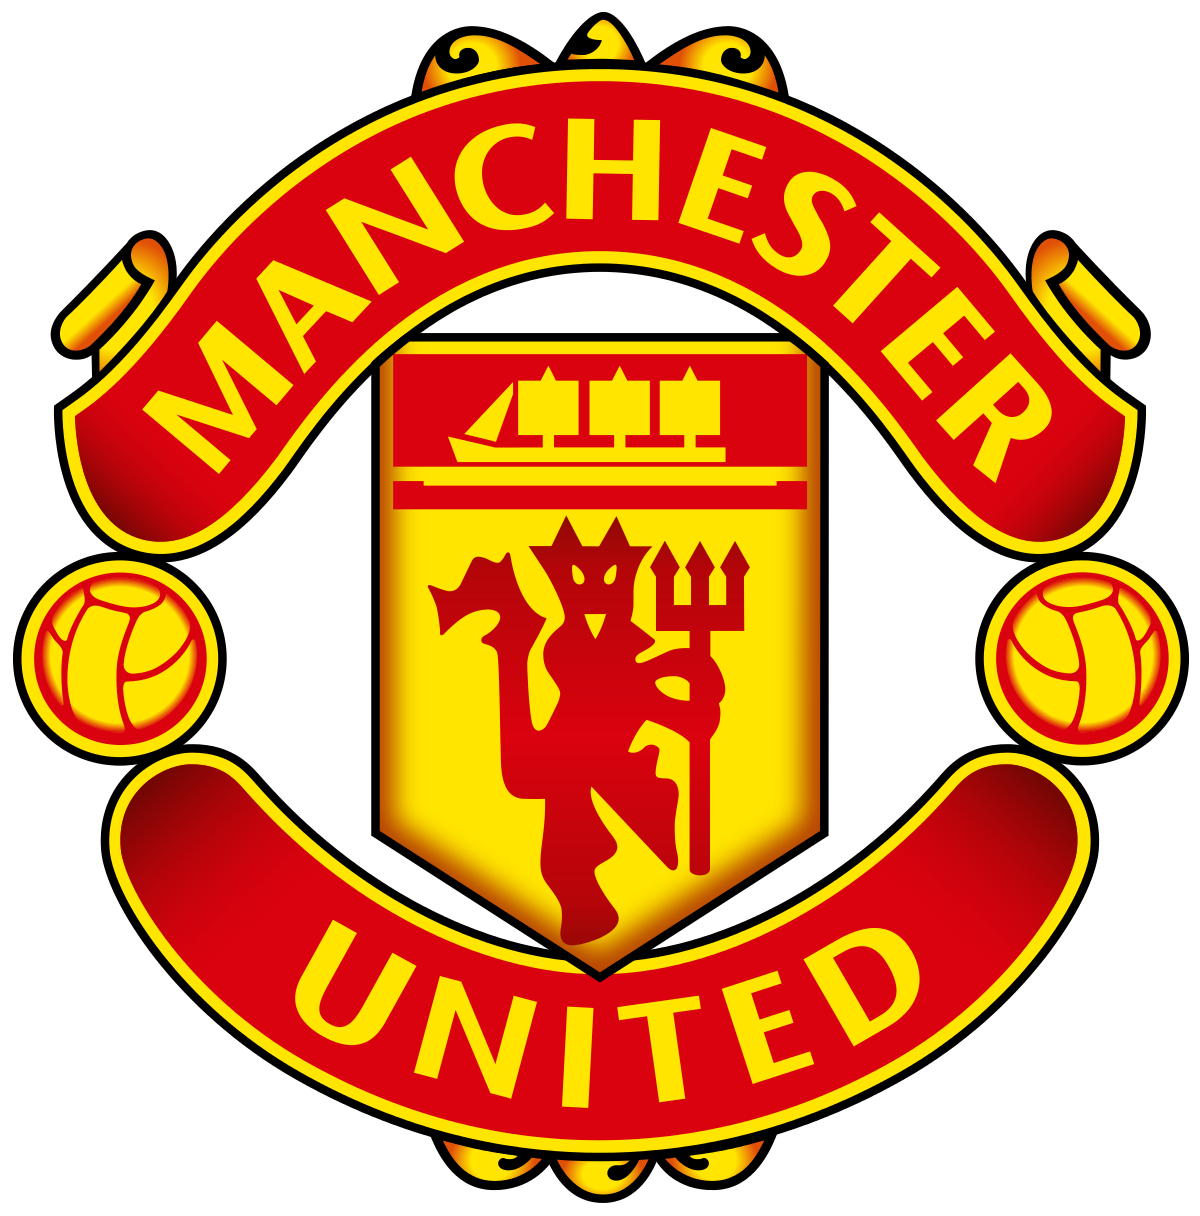 Manchester united f.c. pengurus